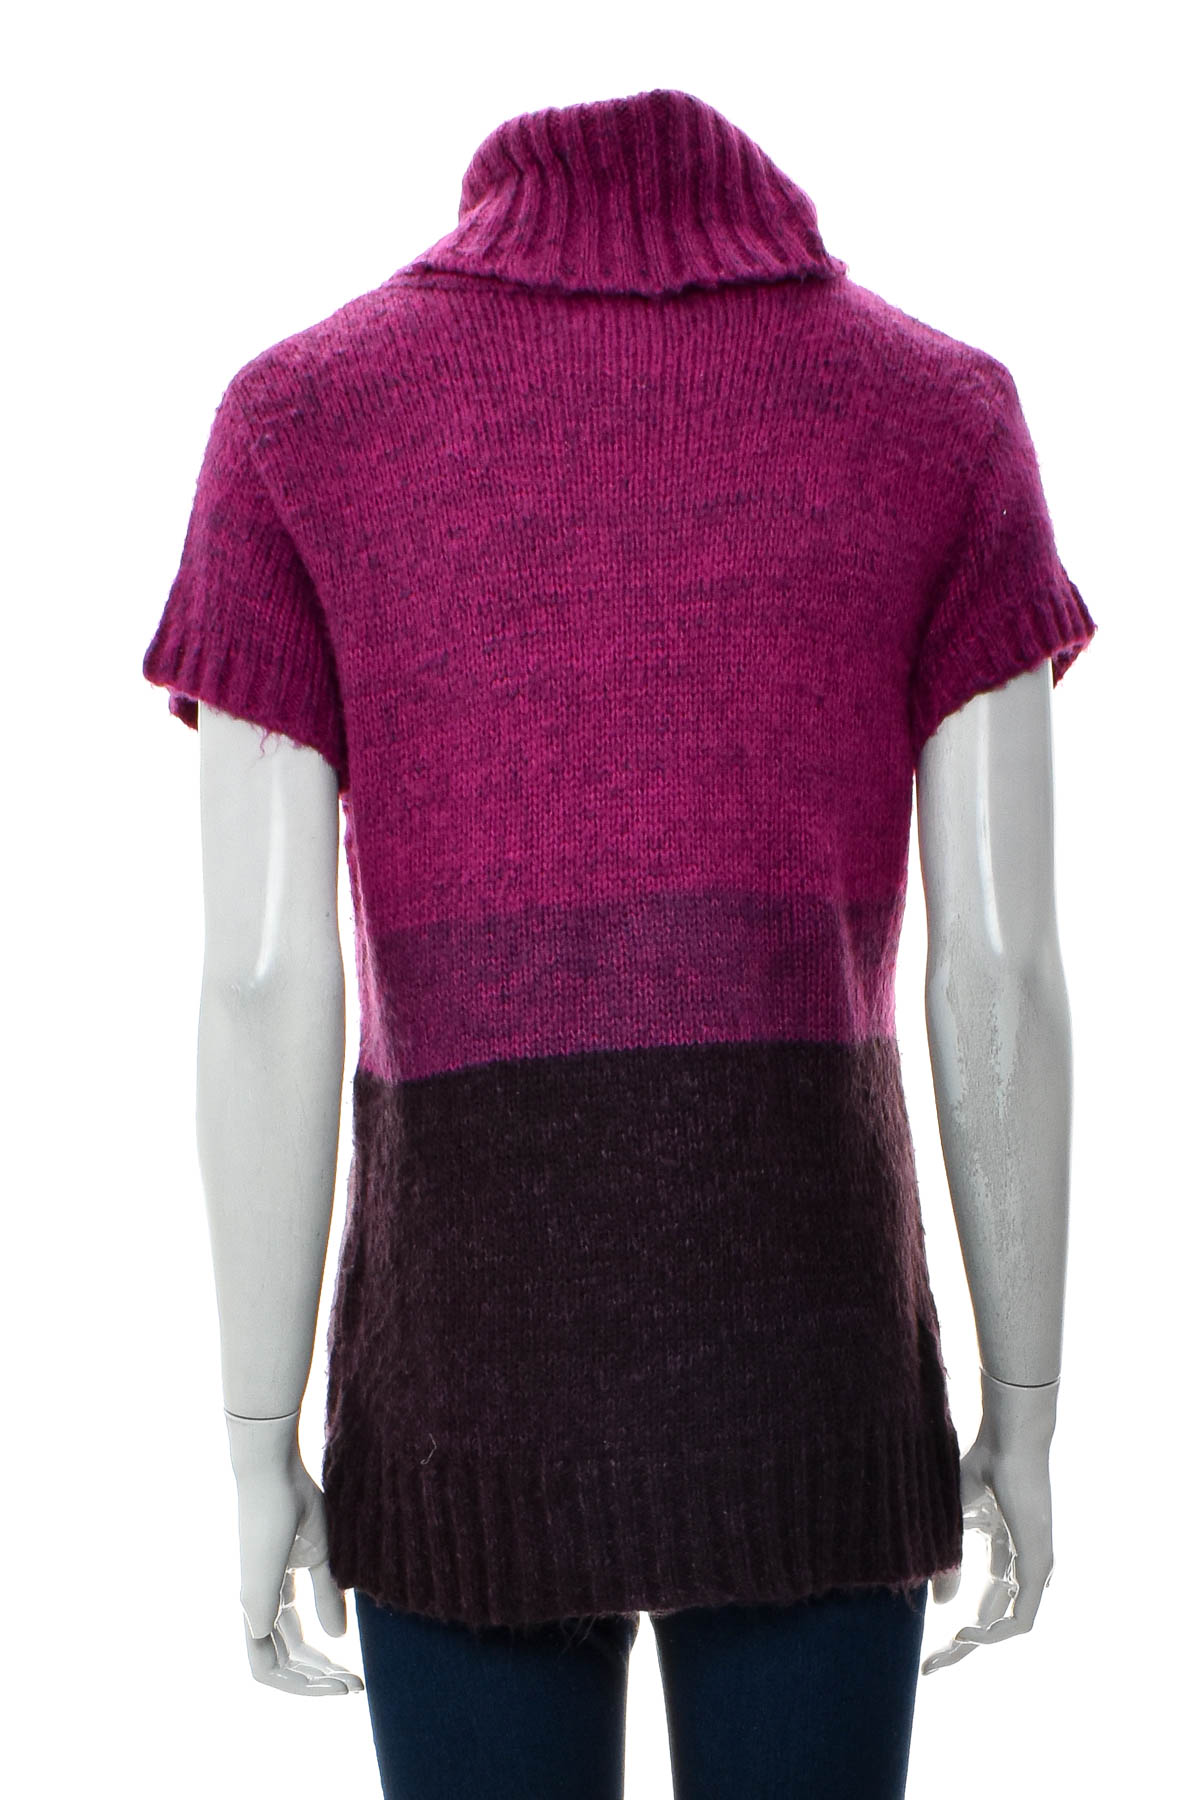 Women's sweater - Dressbarn - 1